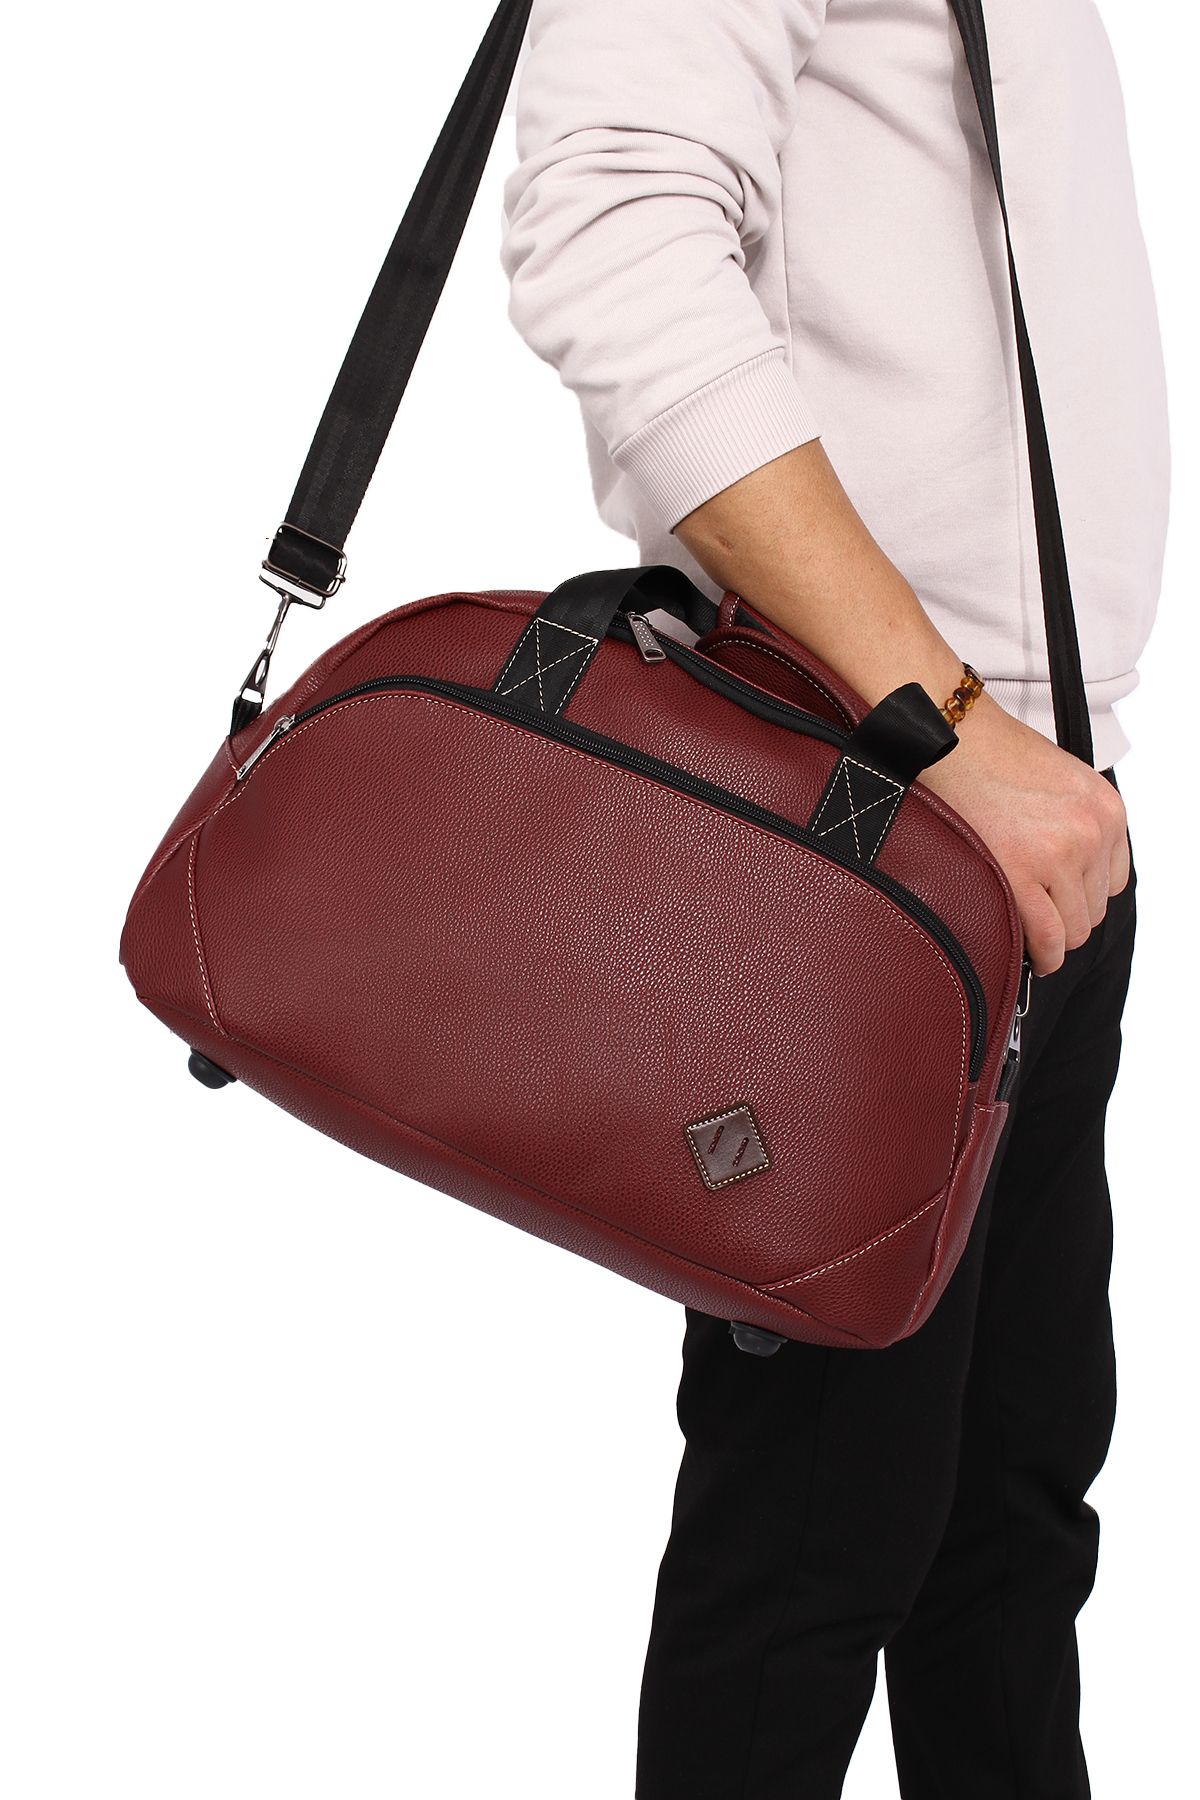 Fiyaka GK60 klasik seyahat valizi spor hastane çantası el ve omuz annebebek çantası kabin boy hostes valiz